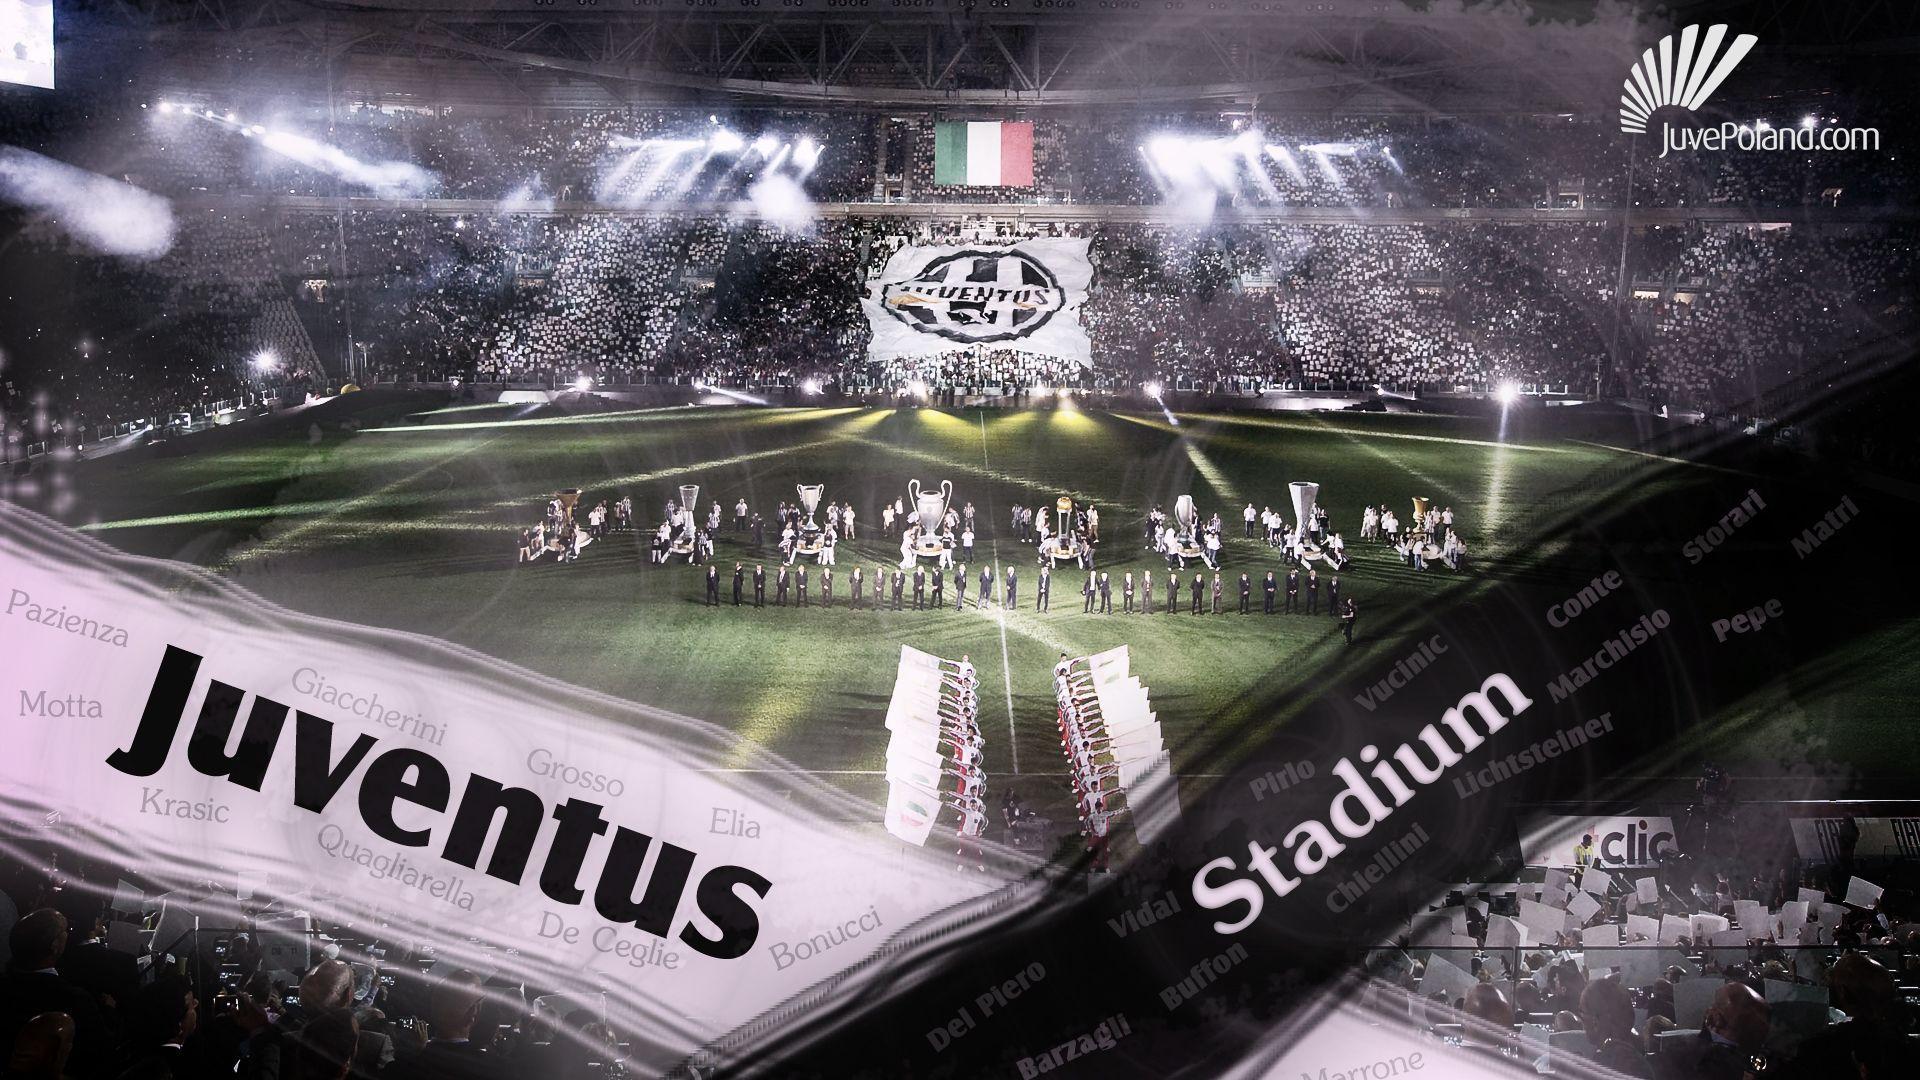 Wallpaper Juventus Stadium 1920x1080 #juventus stadium